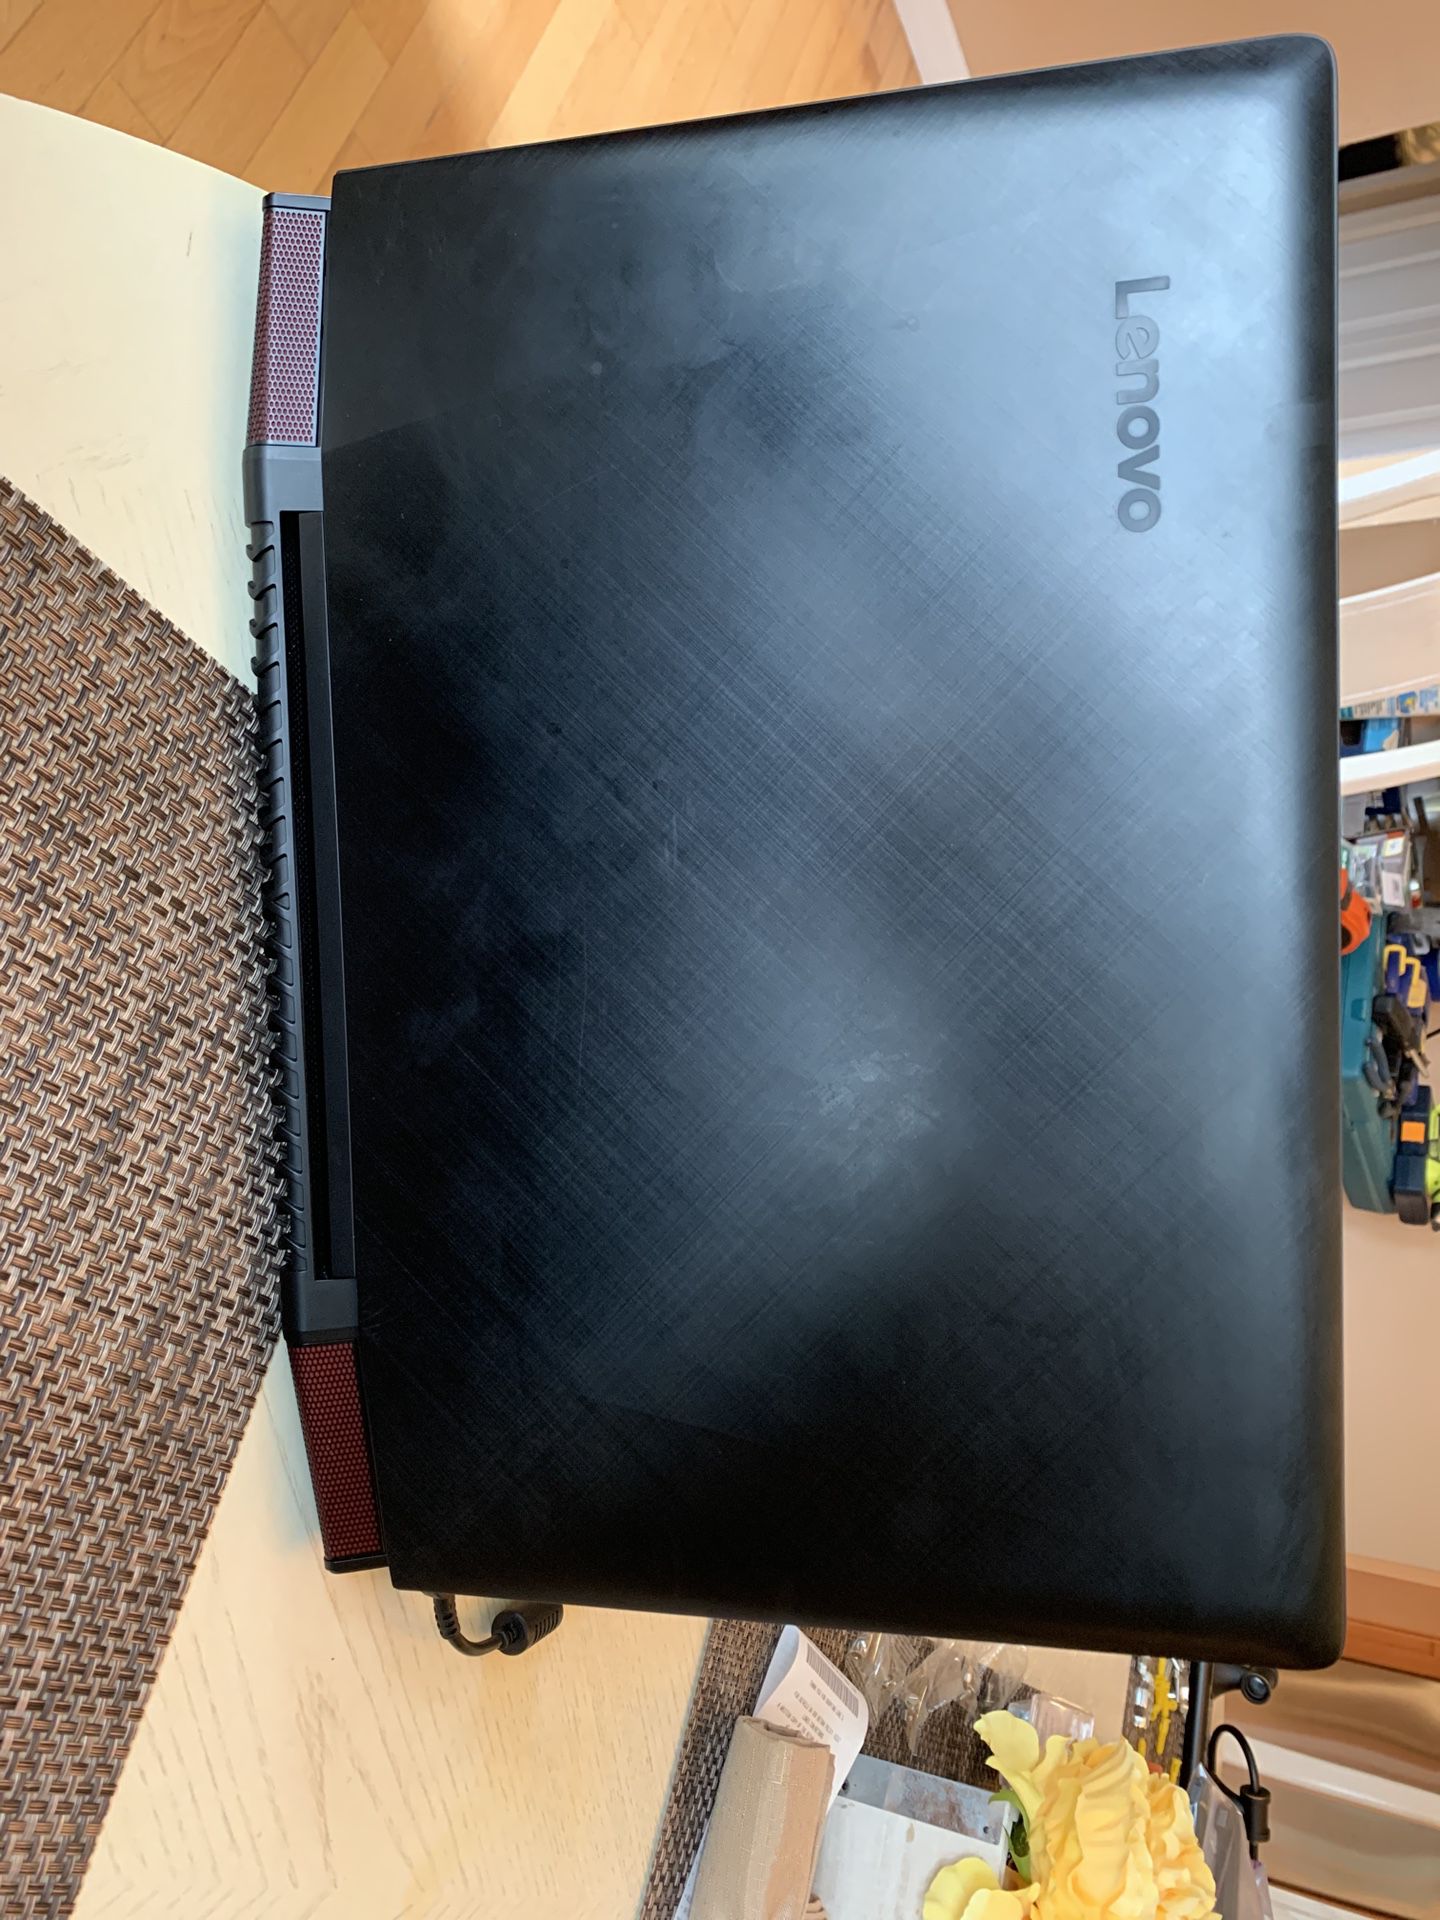 Lenovo ideapad y700 gaming laptop